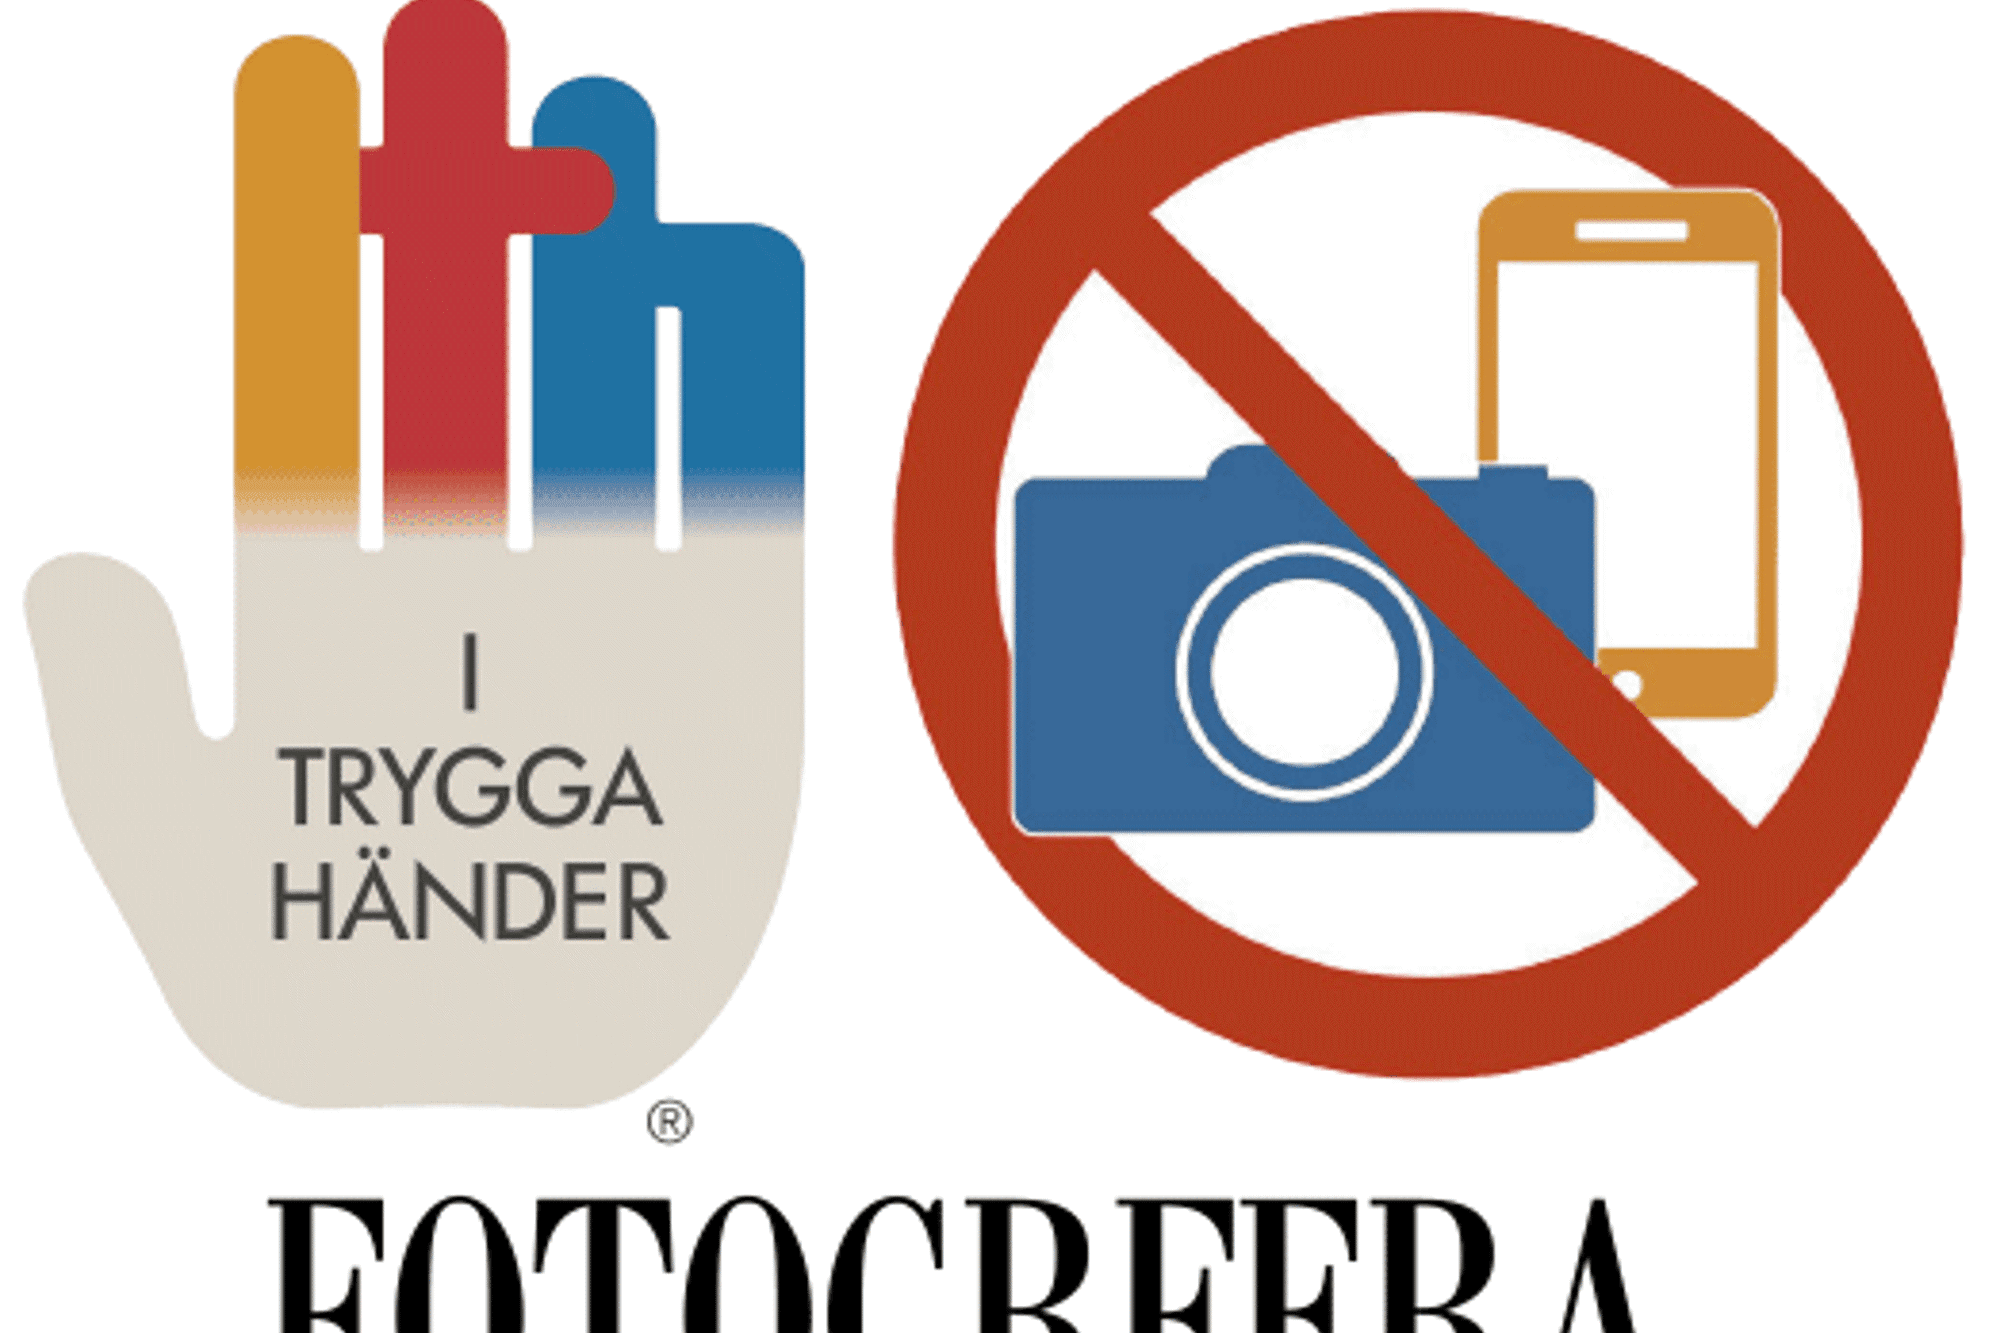 En affischbild med en kamera och mobil som är överkryssad samt logotypen för I trygga händer. Rubriken: Fotografera endast med tillstånd!